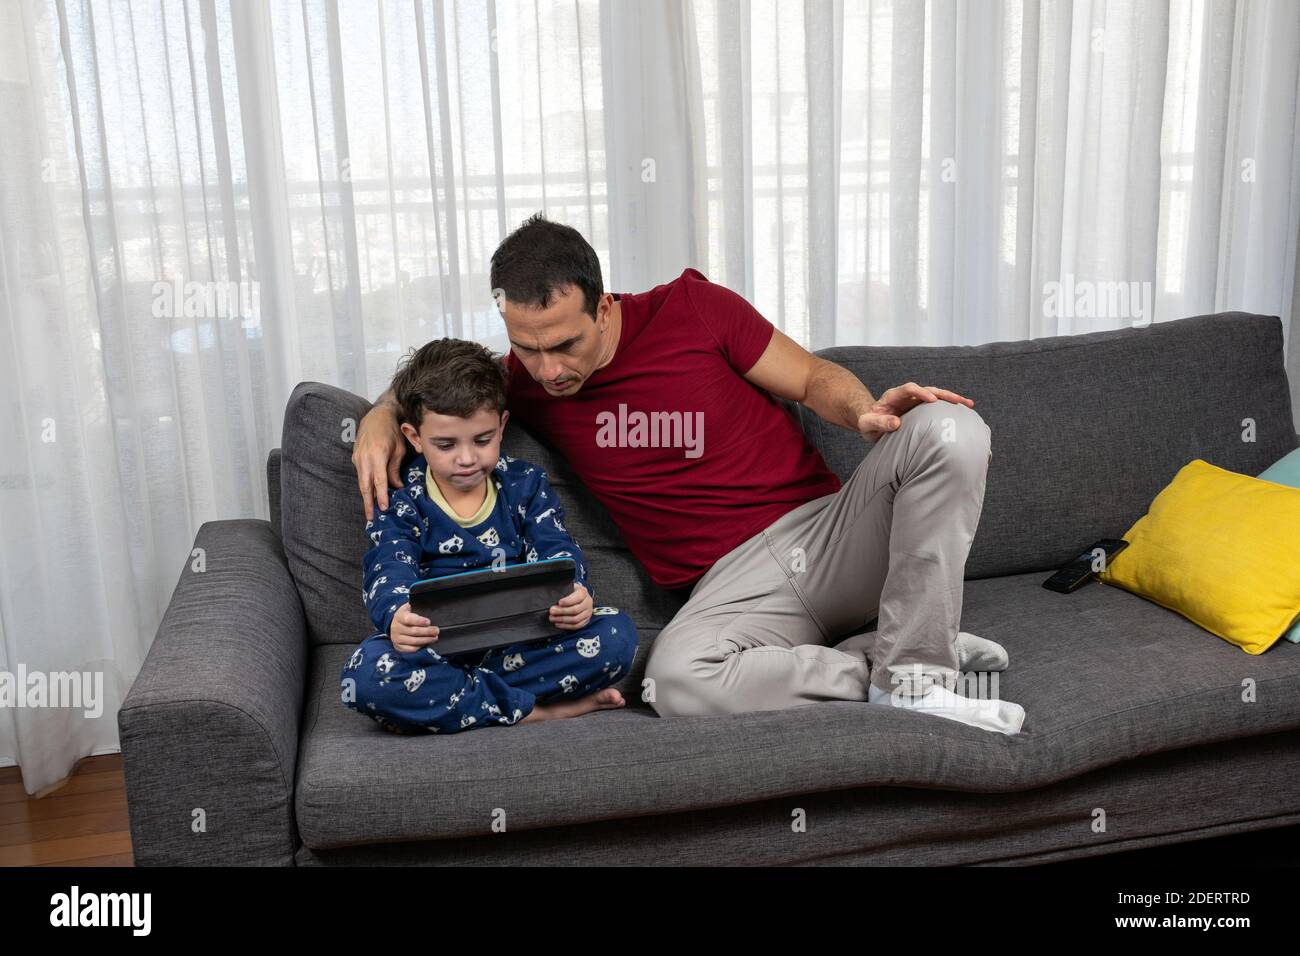 Uomo maturo (44 anni) seduto accanto al figlio (6 anni) guardando un film insieme. Foto Stock